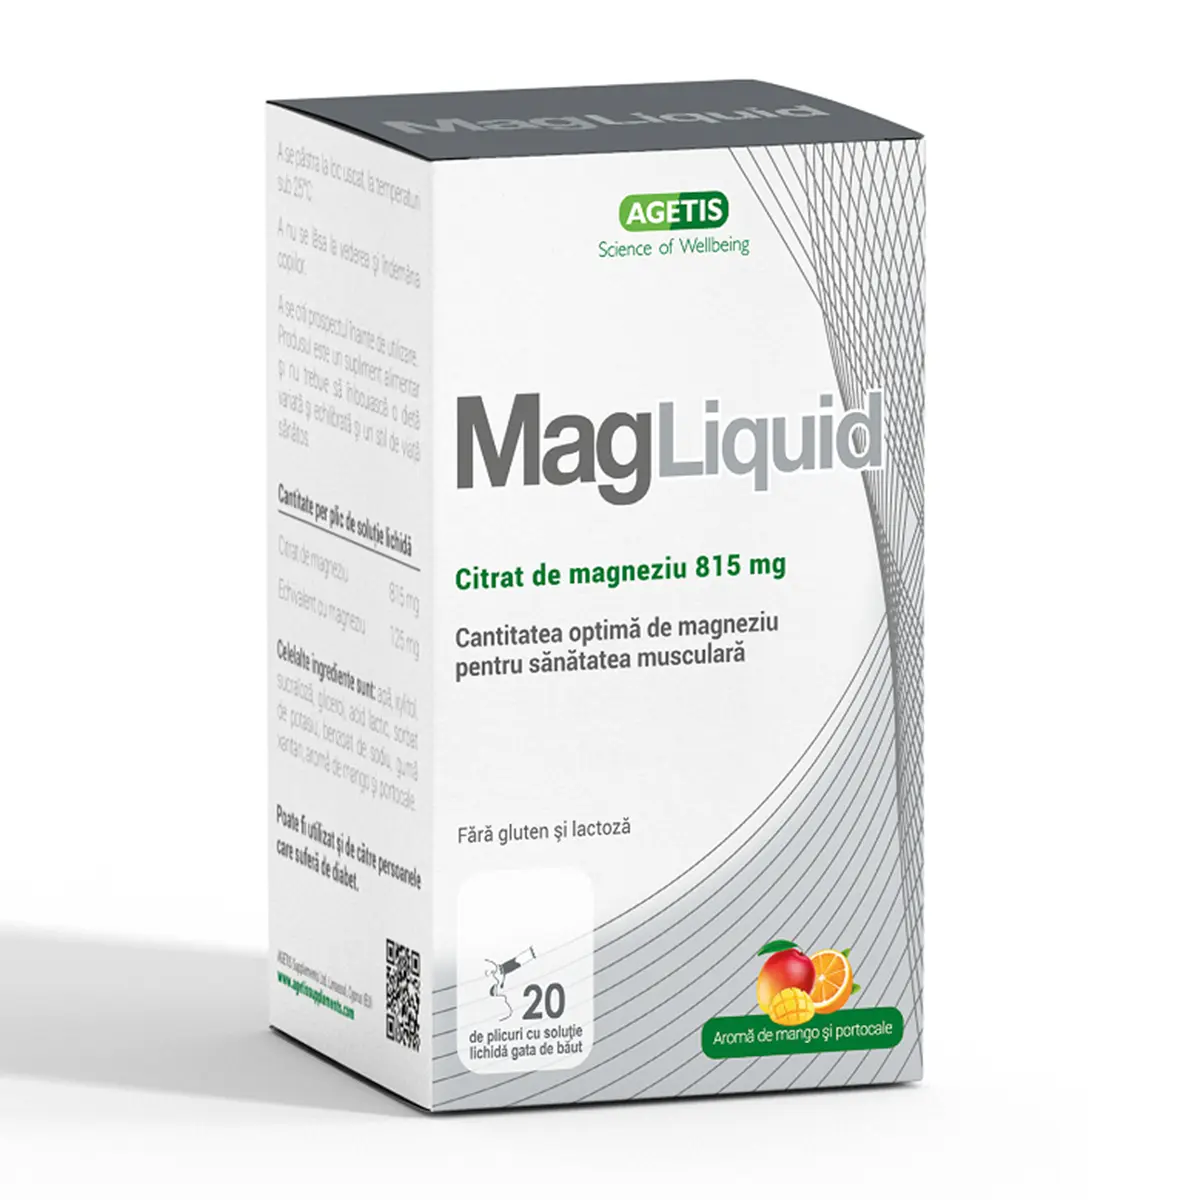 MagLiquid citrat de magneziu solutie, 815mg, 20 plicuri, Agetis